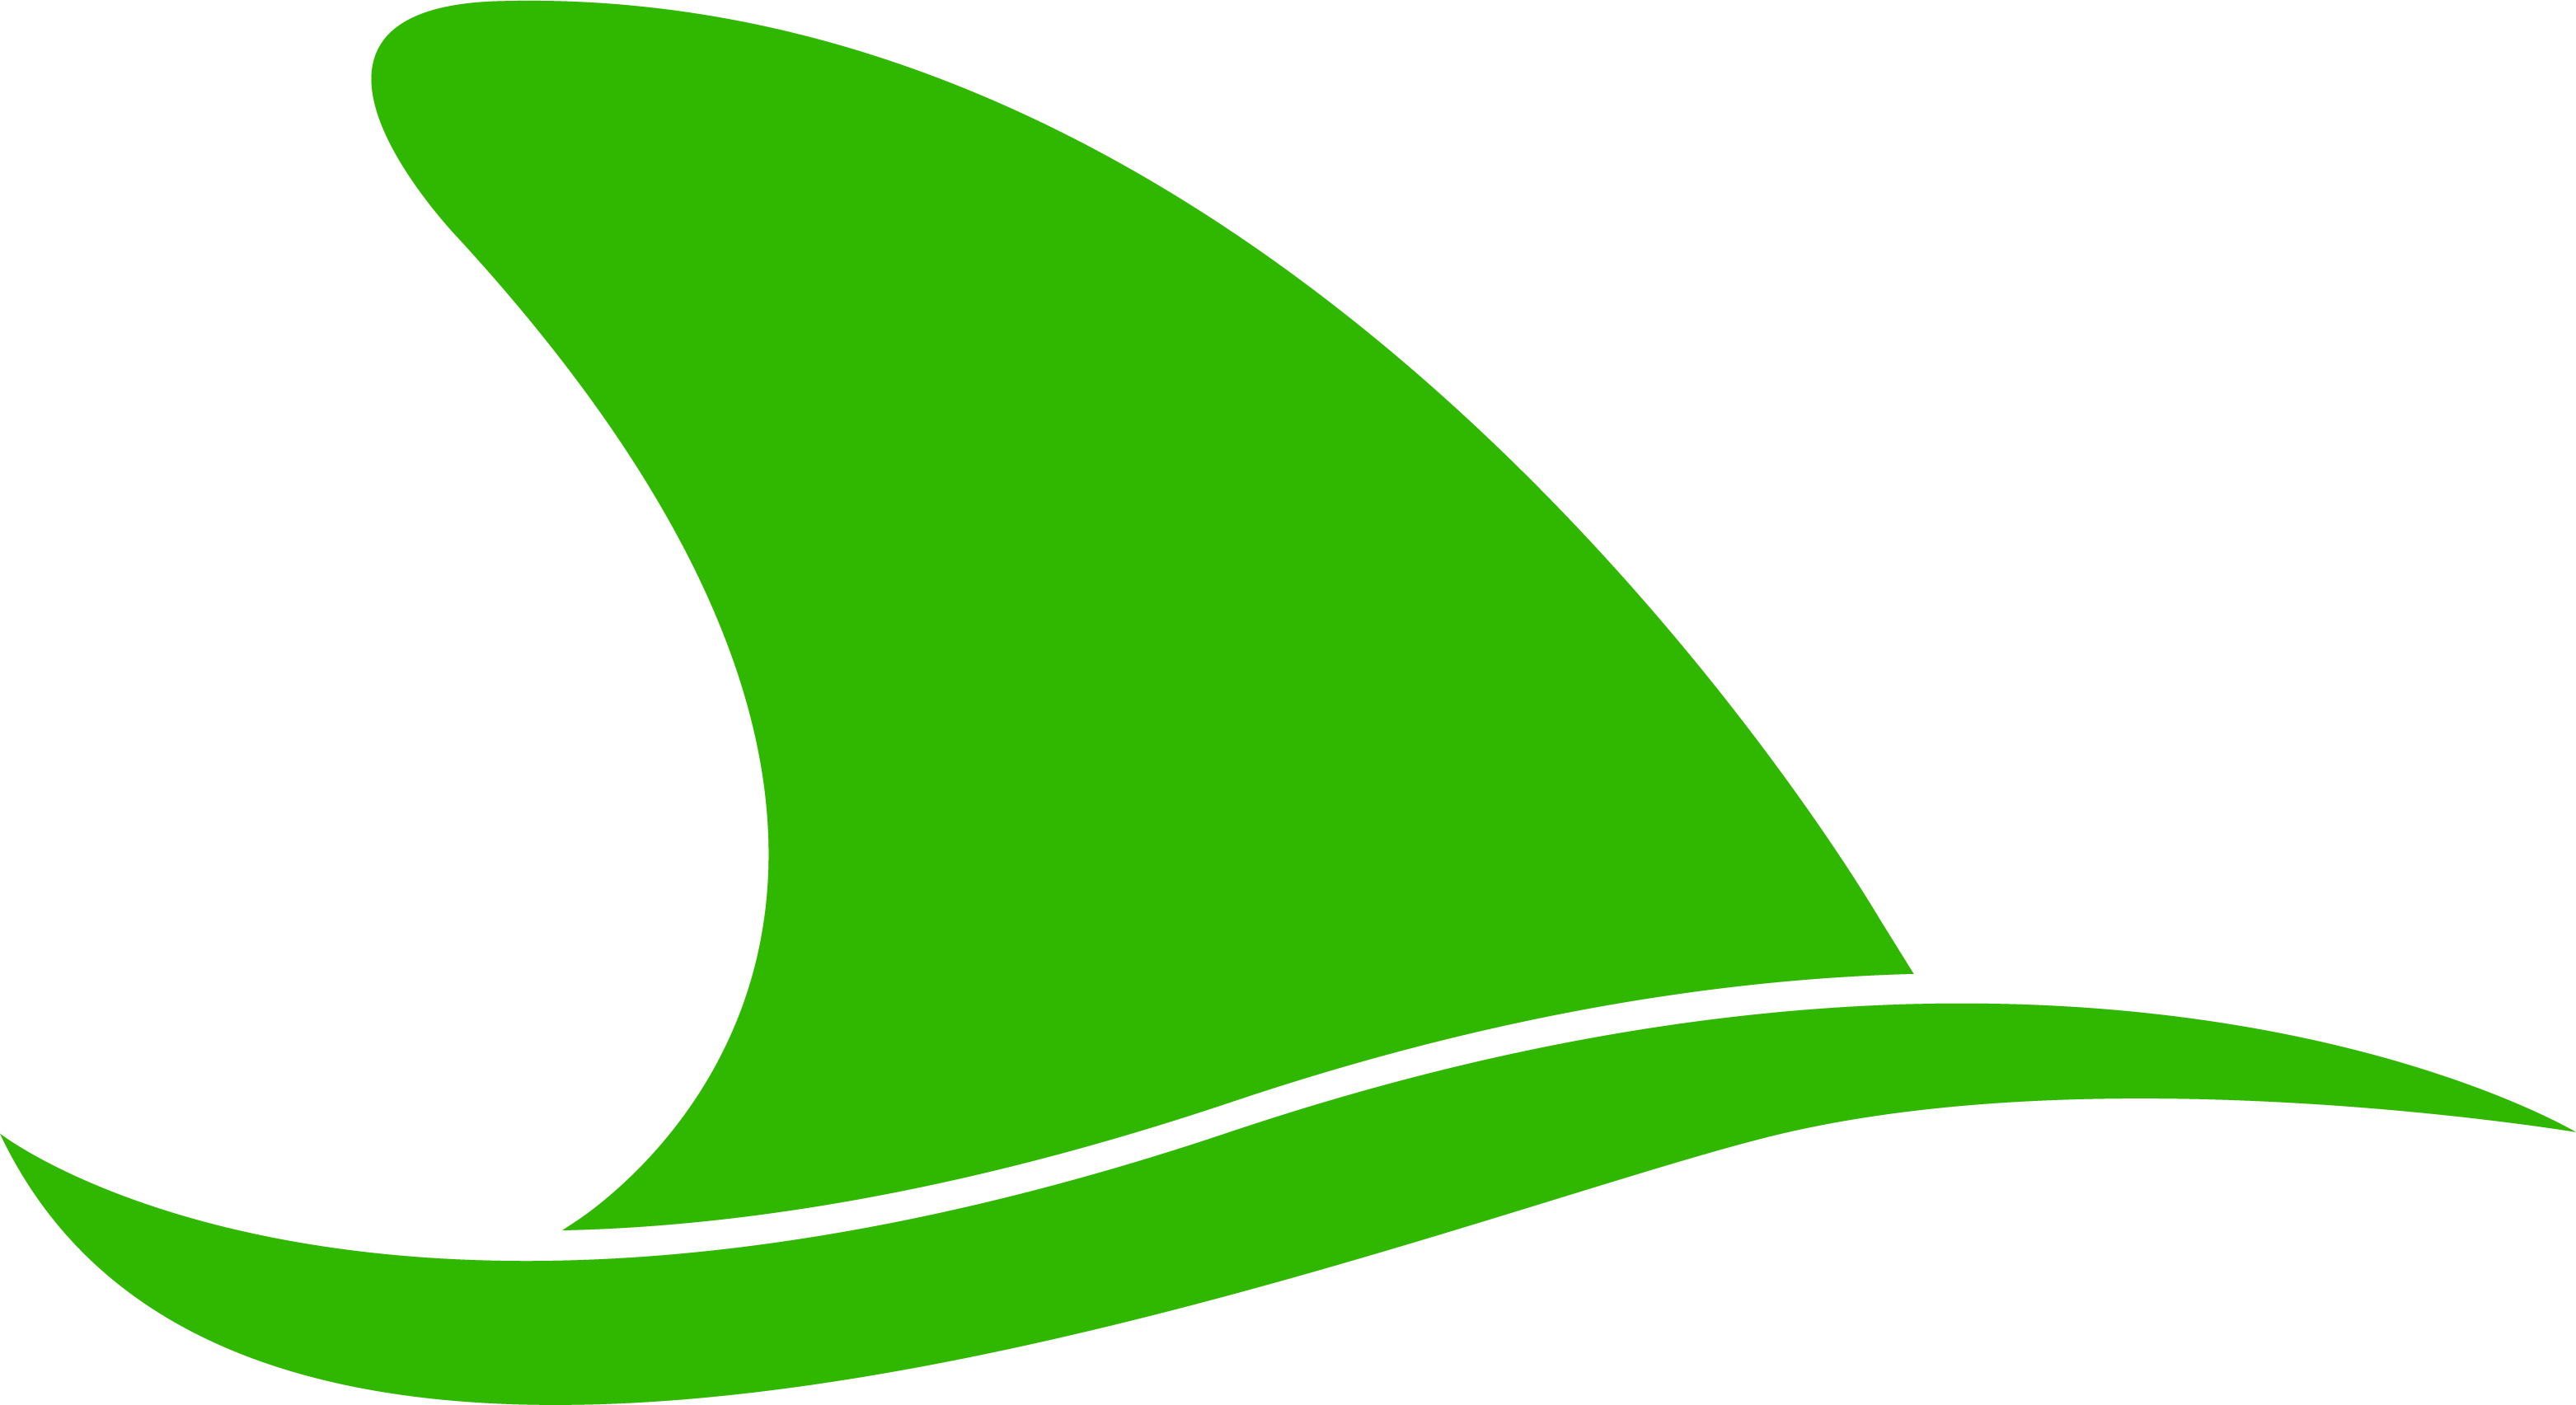 DarkSail logo